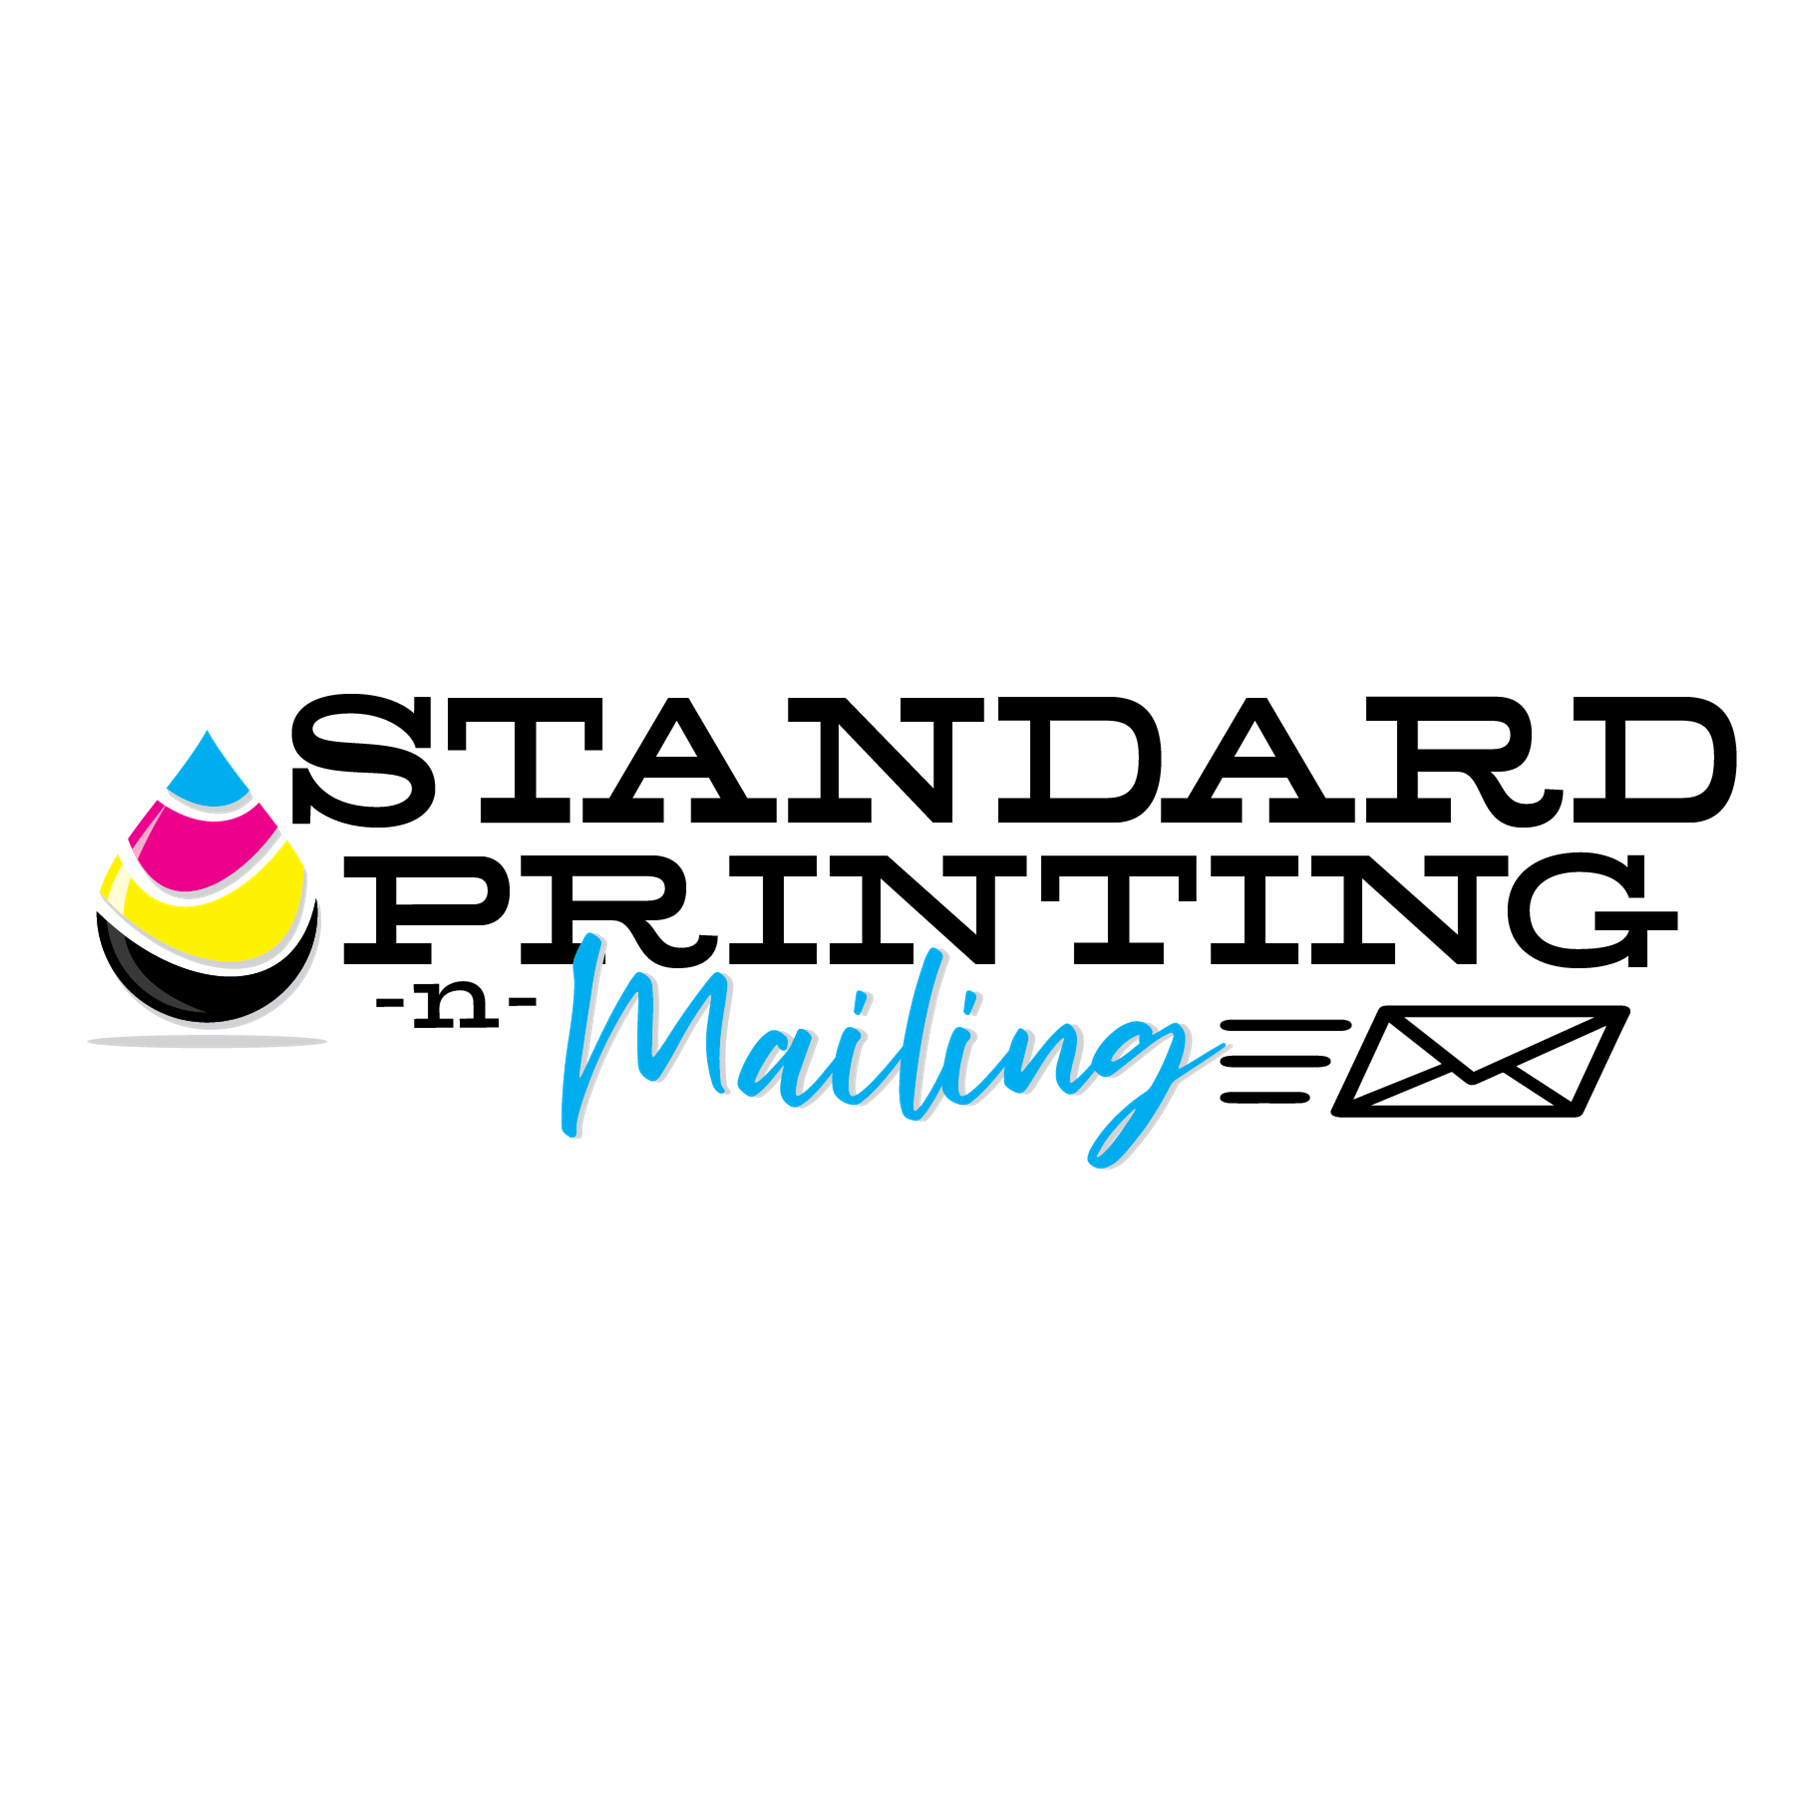 Standard Printing -N-Mailing